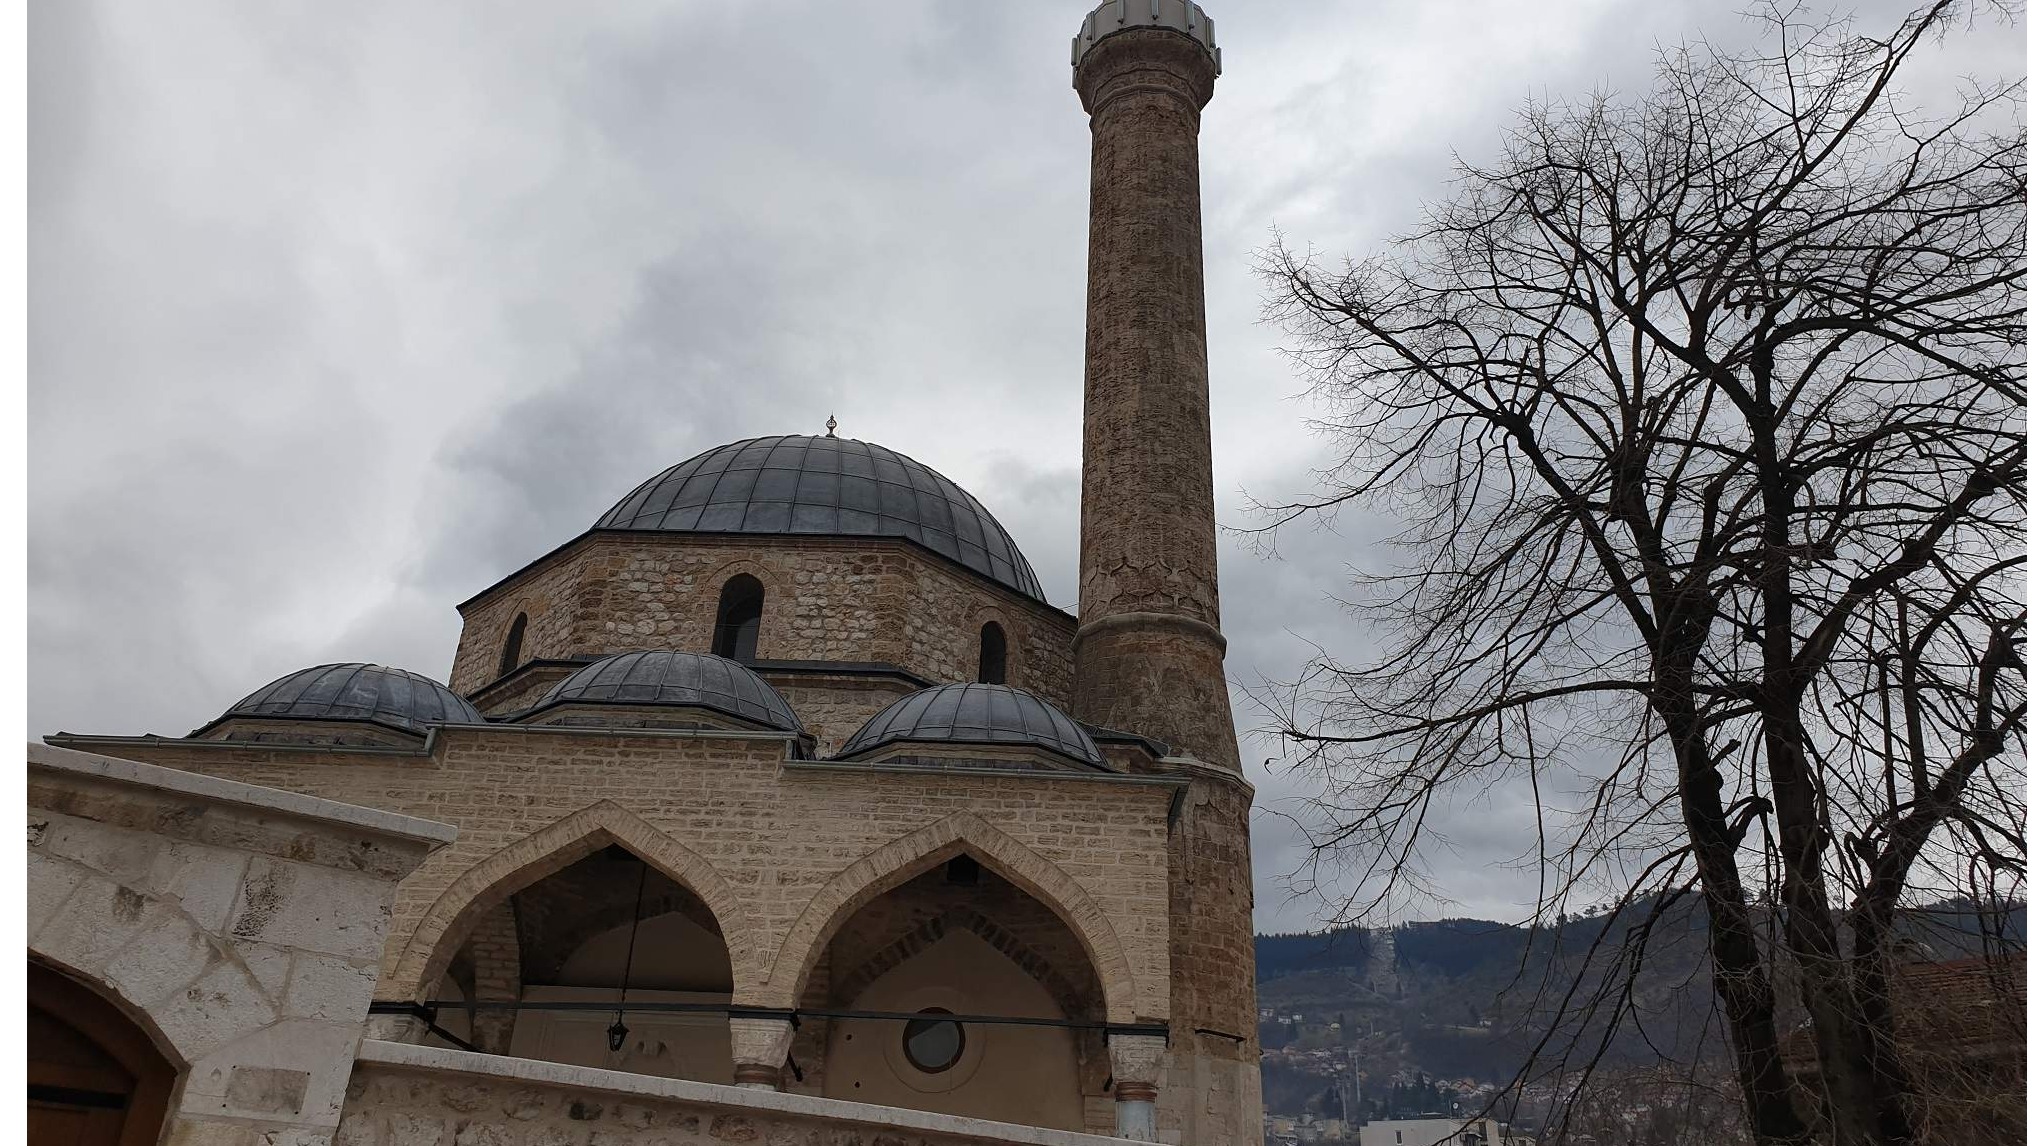 Sarajevo: Otvaranje restaurirane Baščaršijske džamije 21. marta